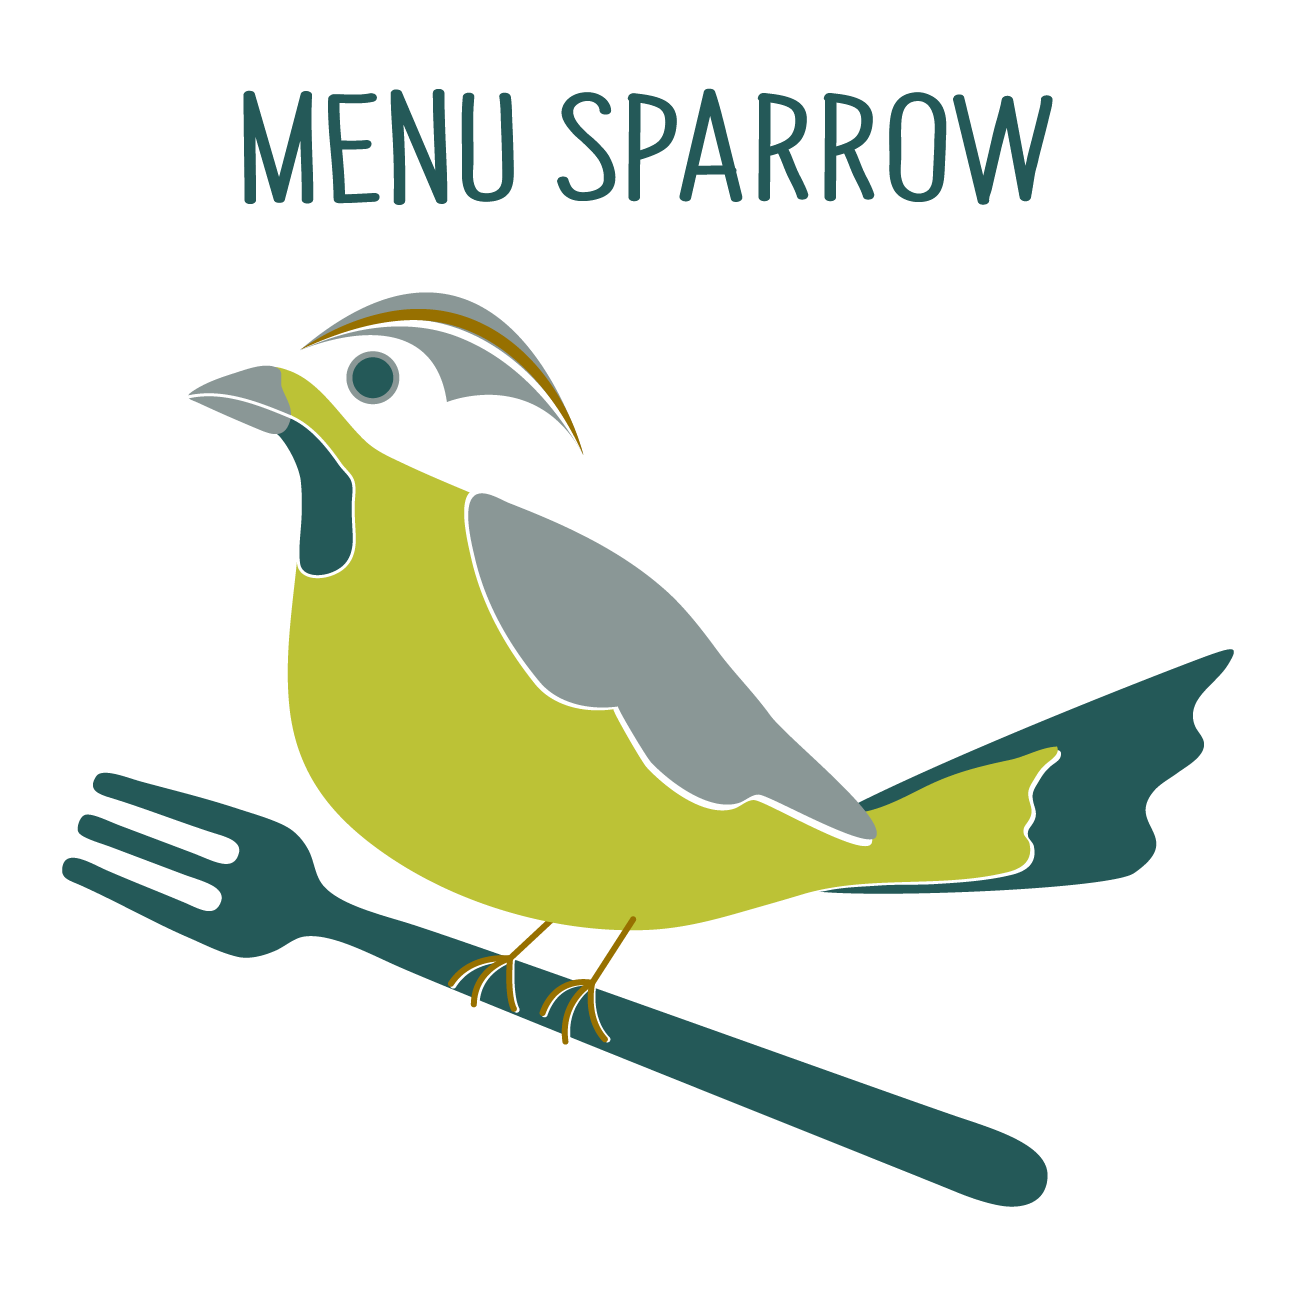 MenuSparrow Logo